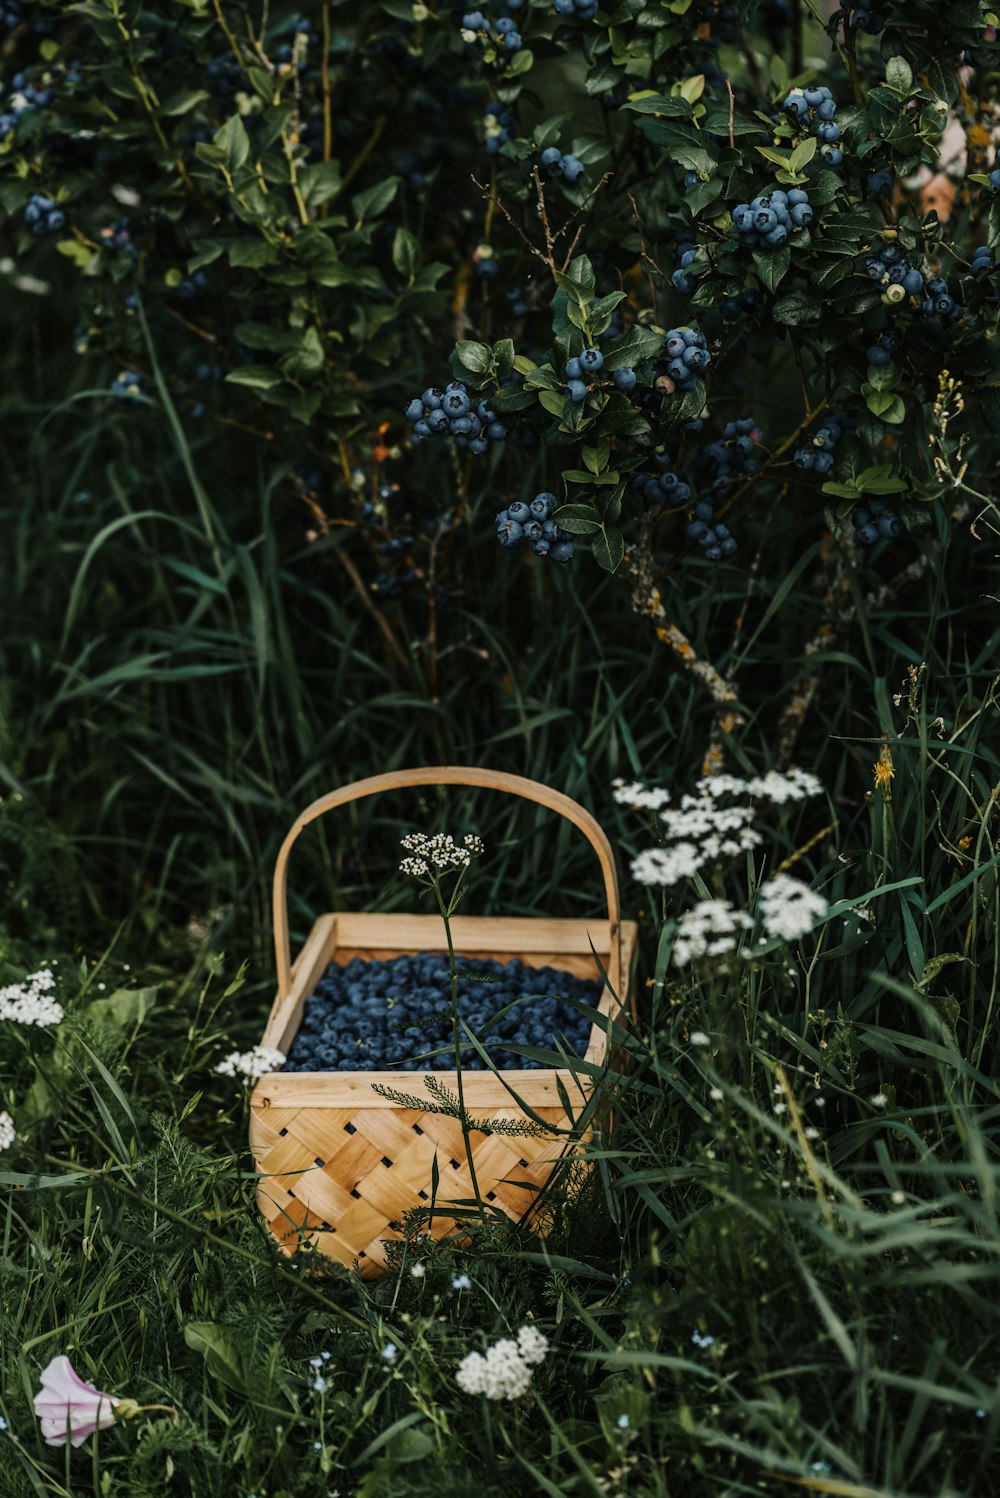 a basket in a garden